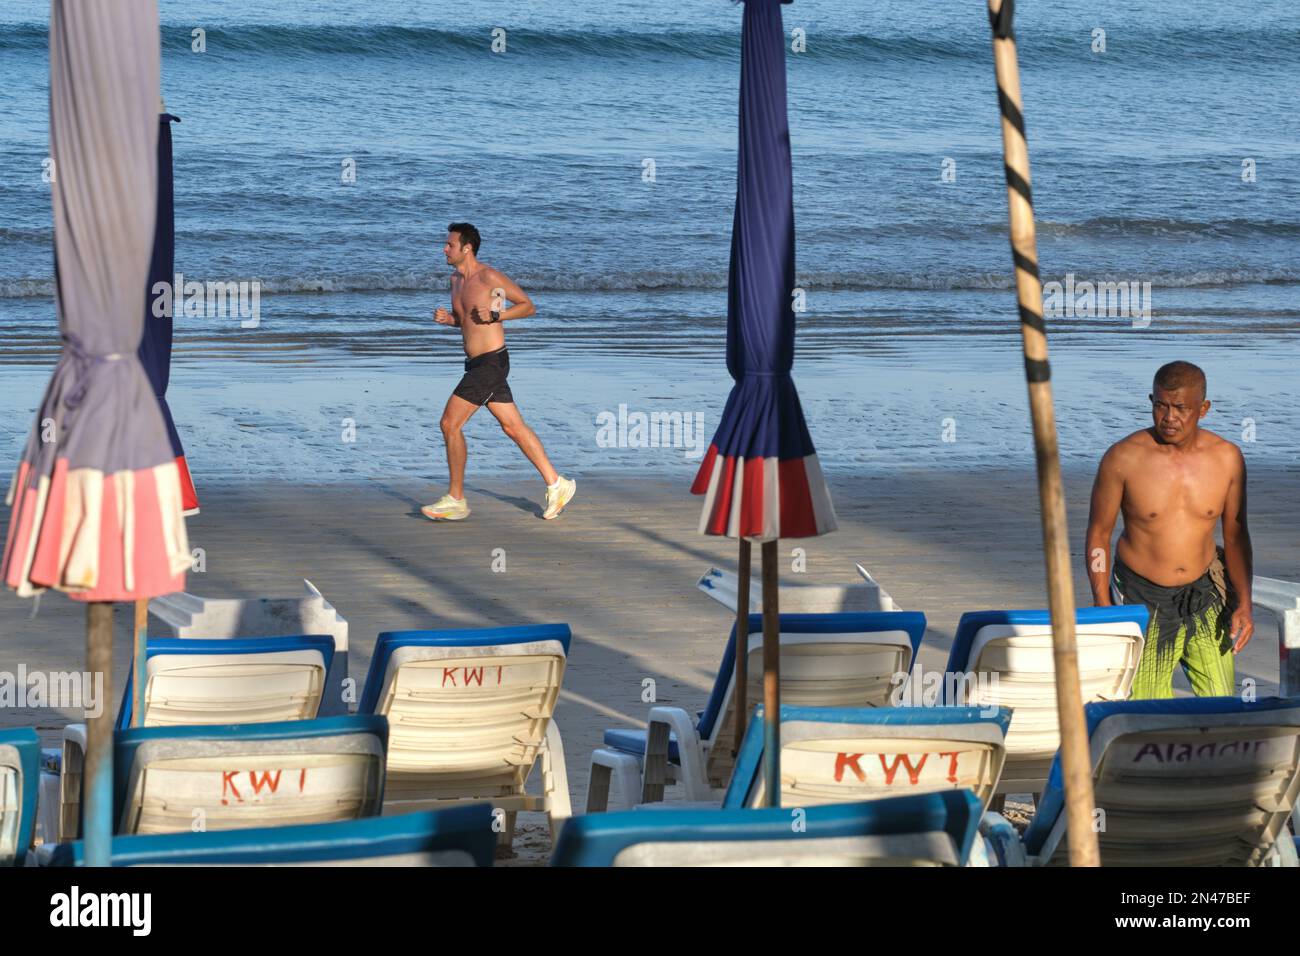 En début de matinée, un touriste occidental se lance sur la plage de Kamala à Phuket, en Thaïlande, tandis qu'un homme local organise des chaises longues et des parasols de plage Banque D'Images